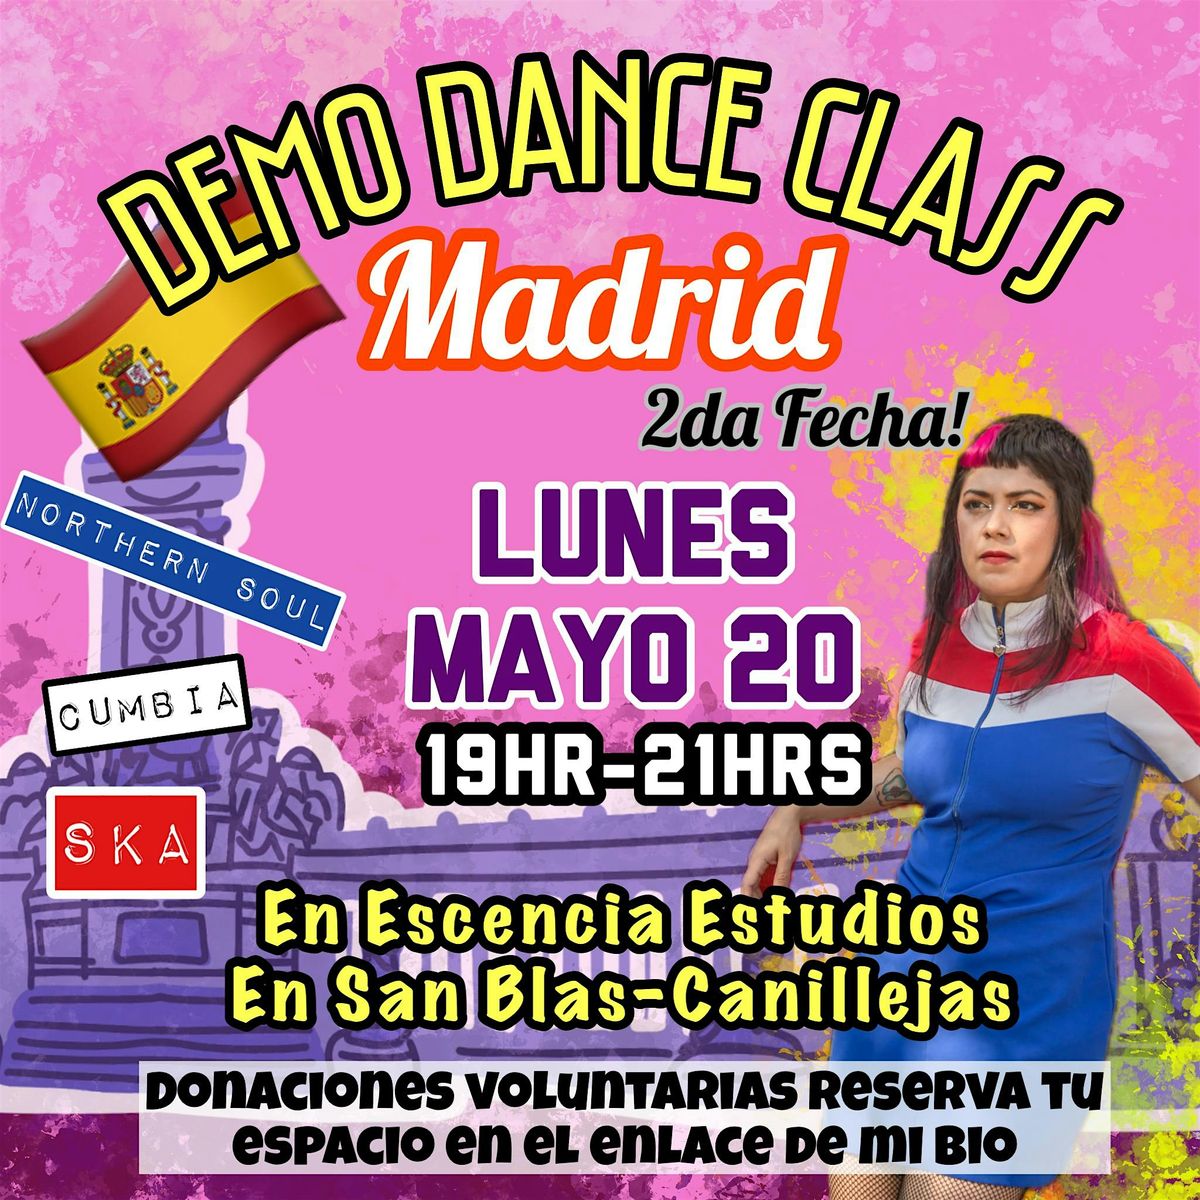 Demo Class Madrid (2da Fecha)